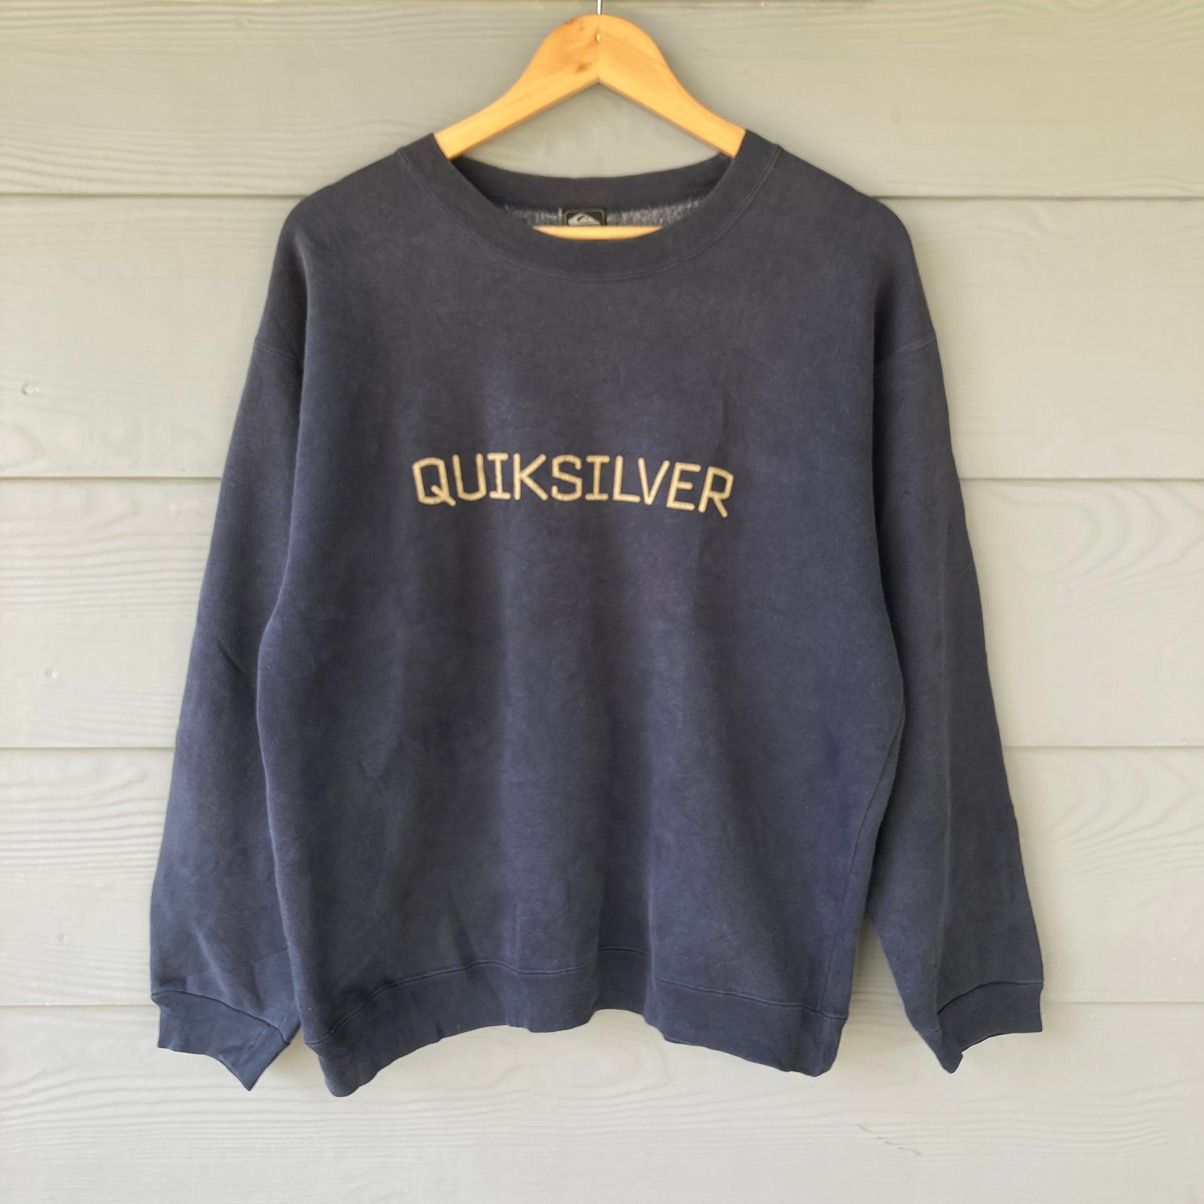 Vintage Quicksilver Big Logo Sweatshirt Made in Japan - 1